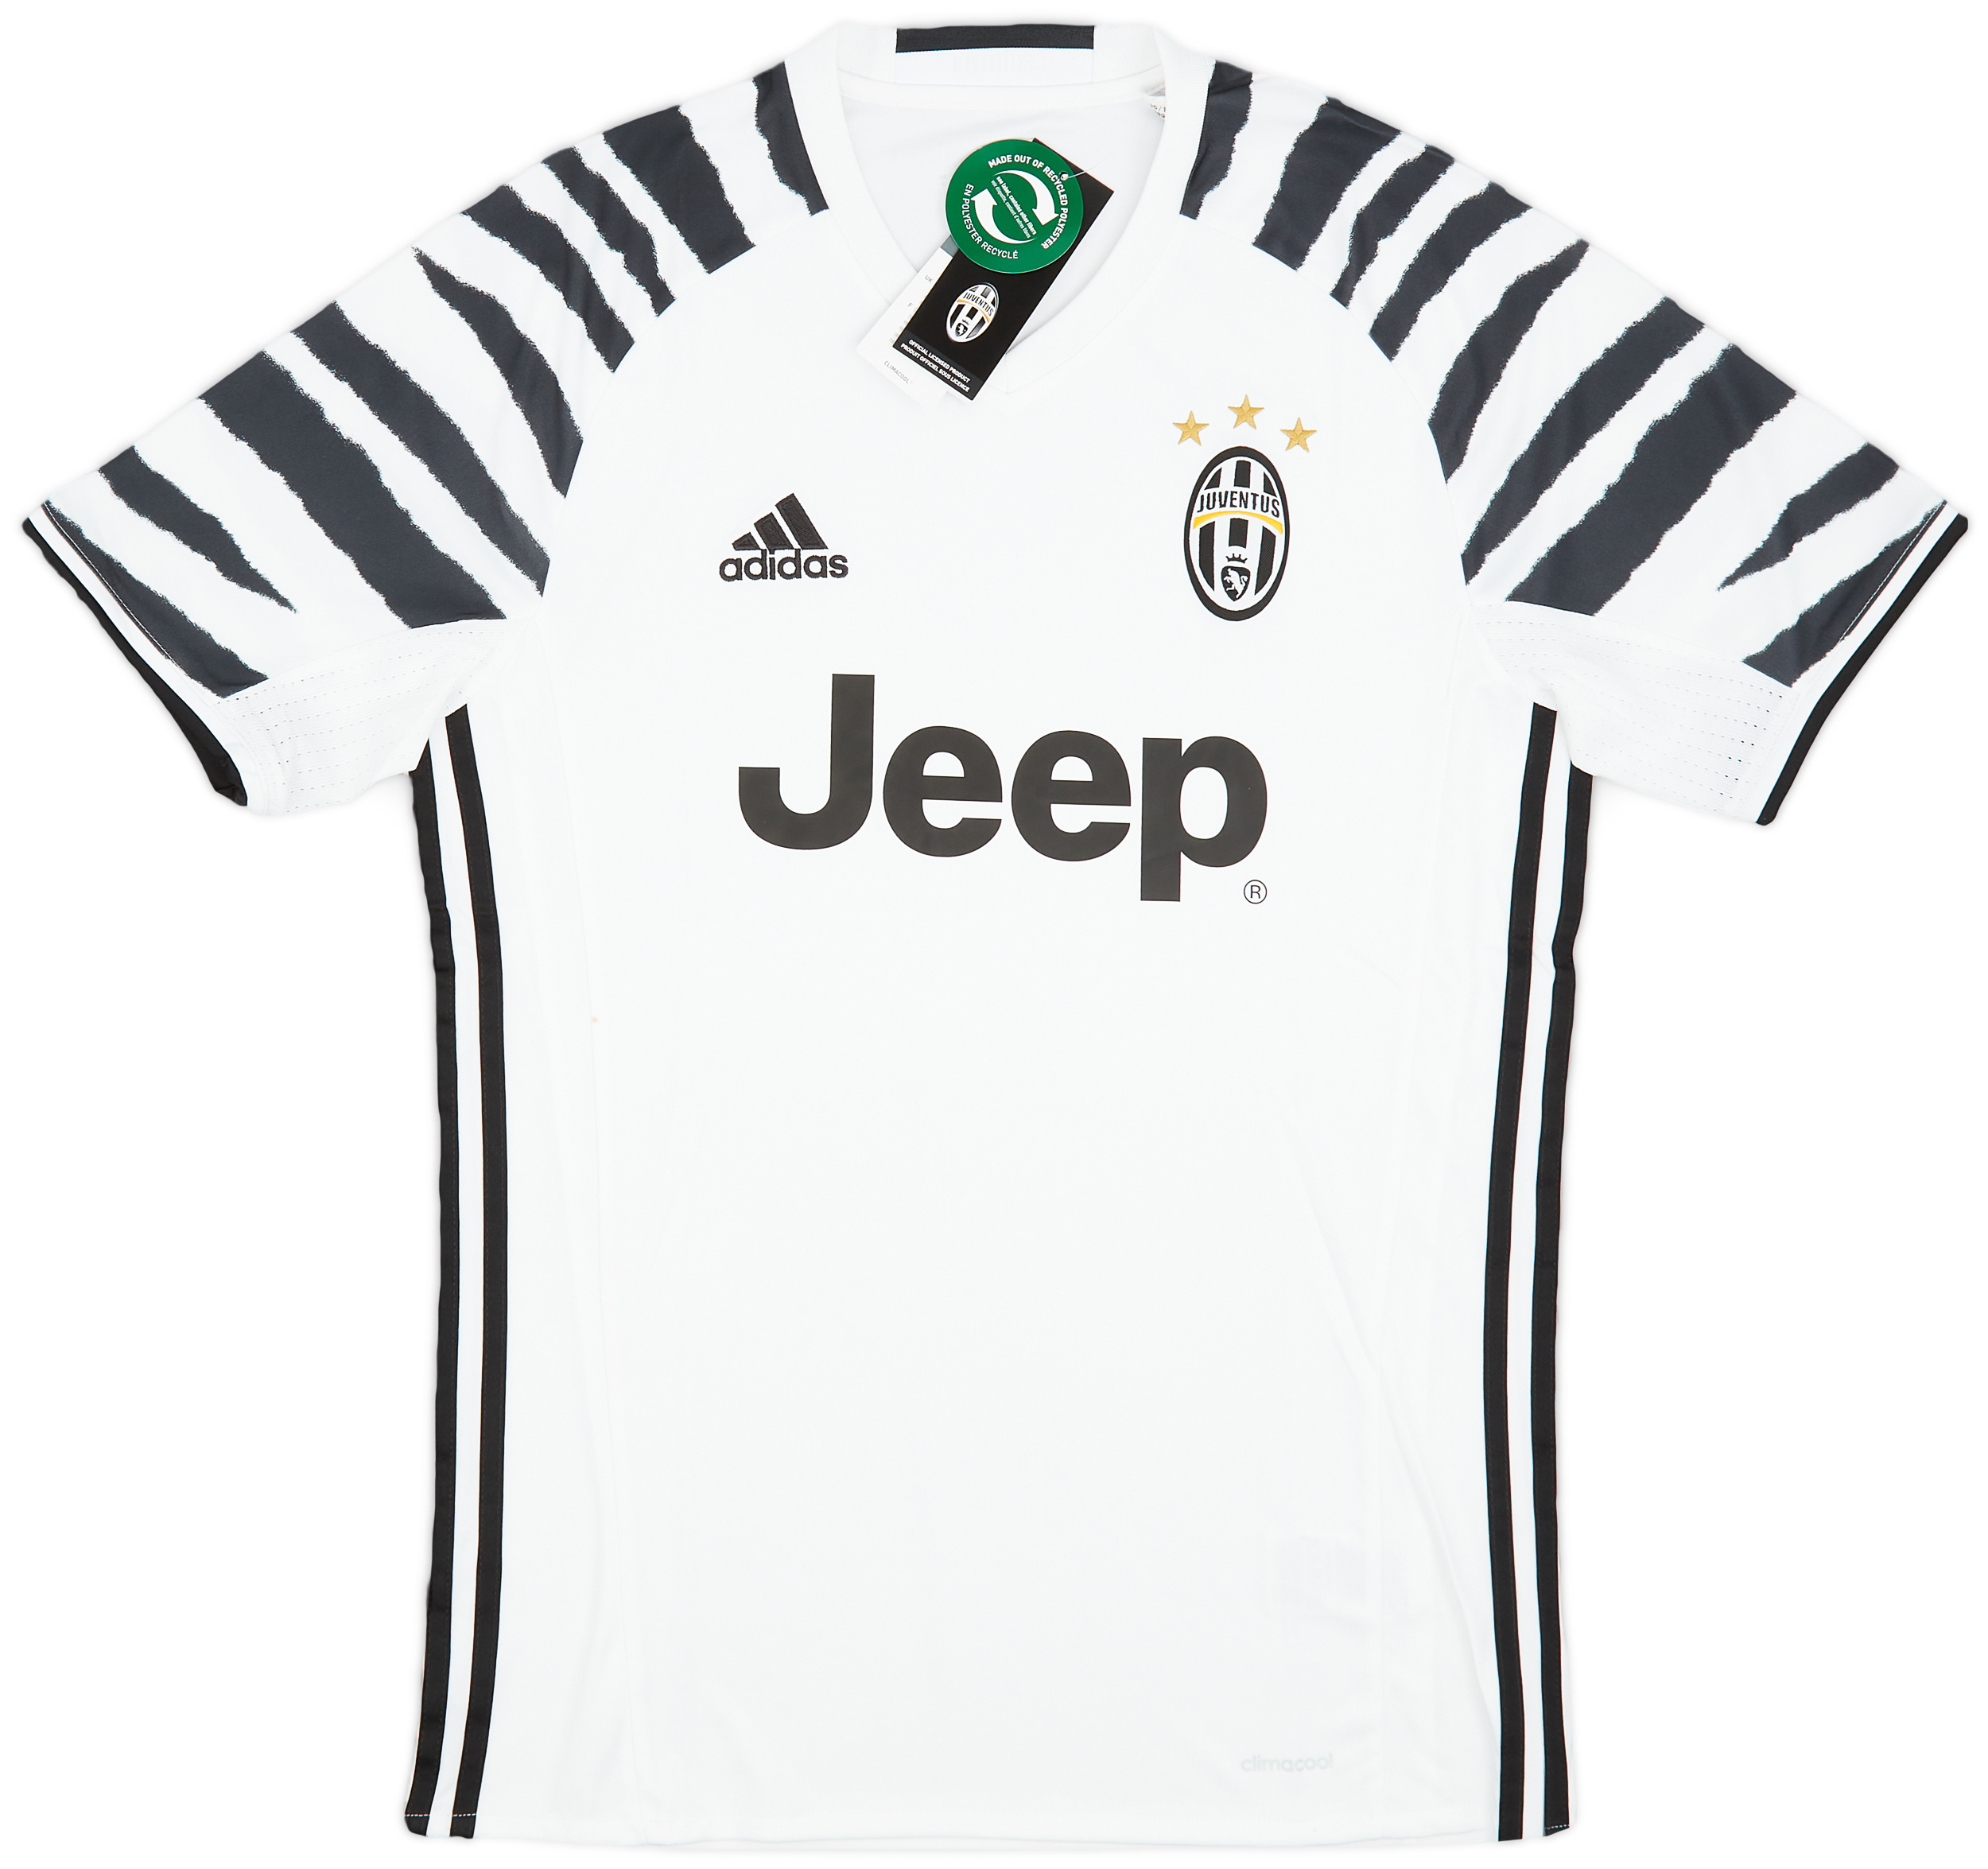 Juventus  Tredje tröja (Original)